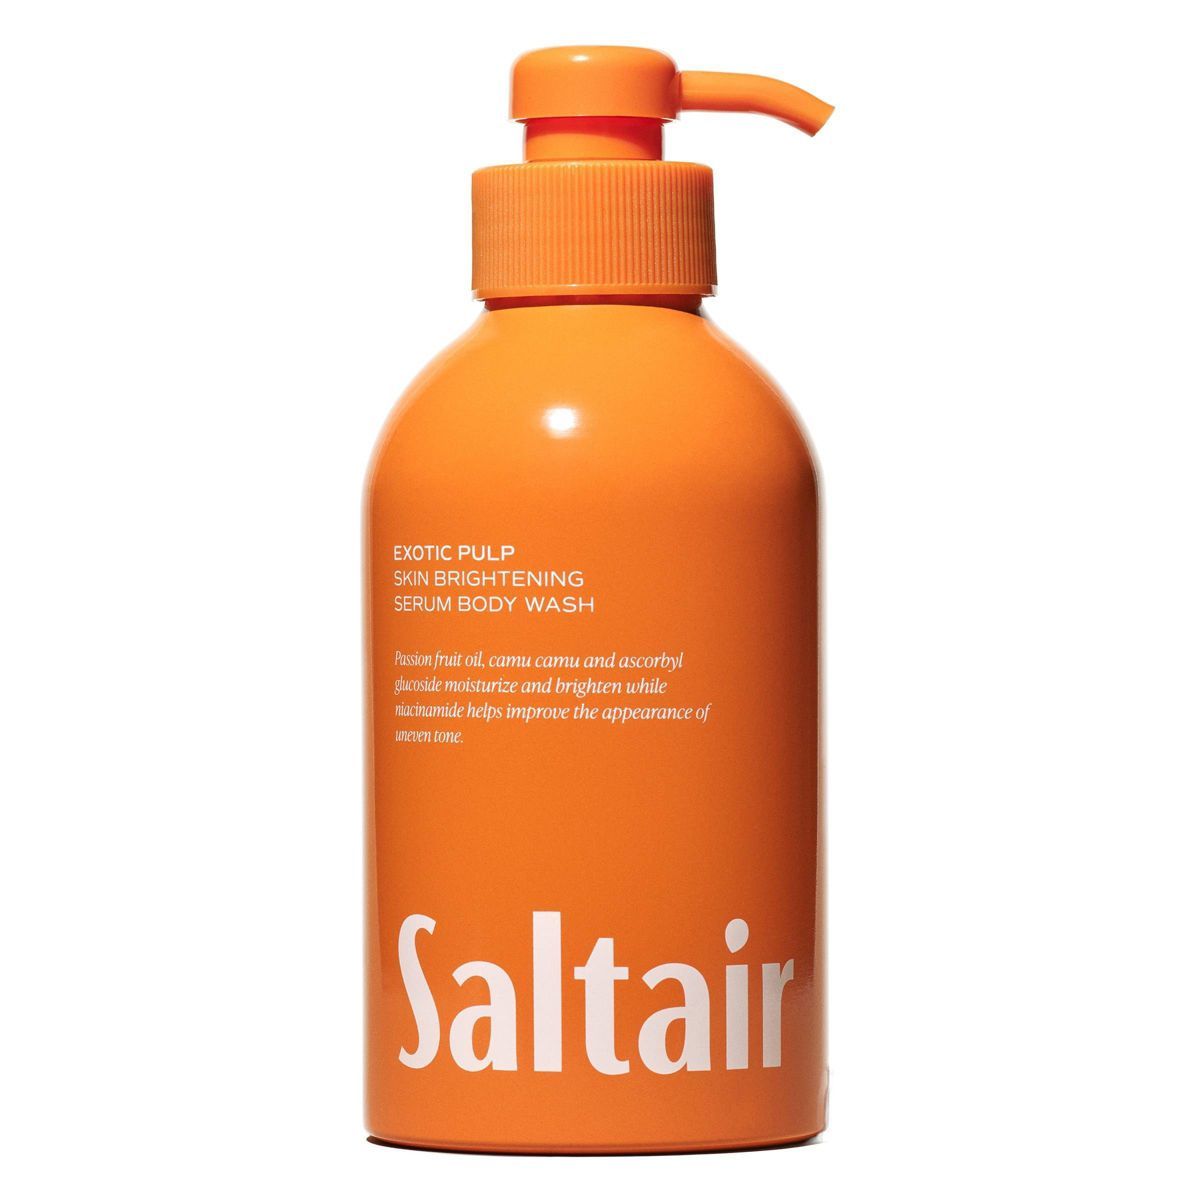 Saltair Exotic Pulp Serum Body Wash - Citrus Scent - 17 fl oz | Target